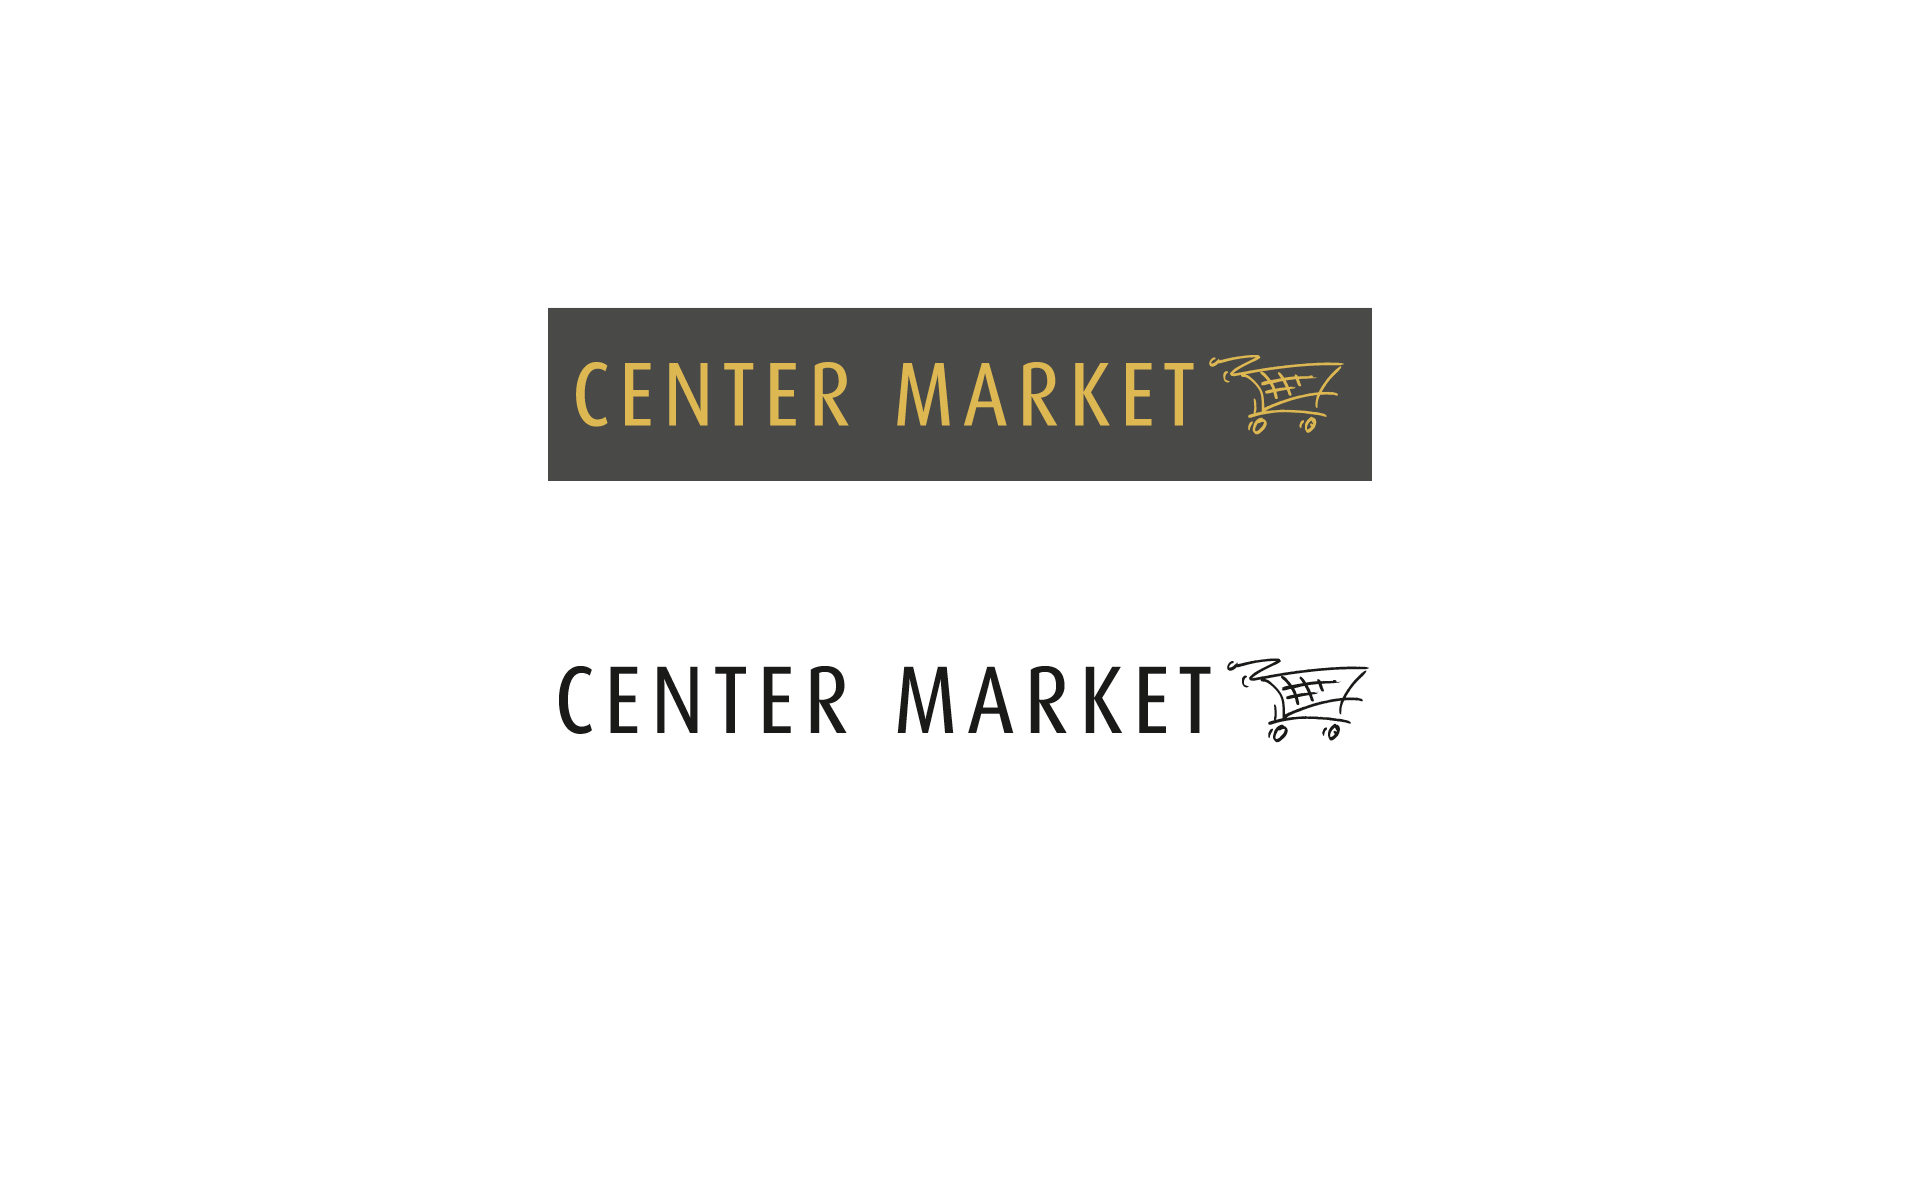 Überarbeitung des Logos - Center Market